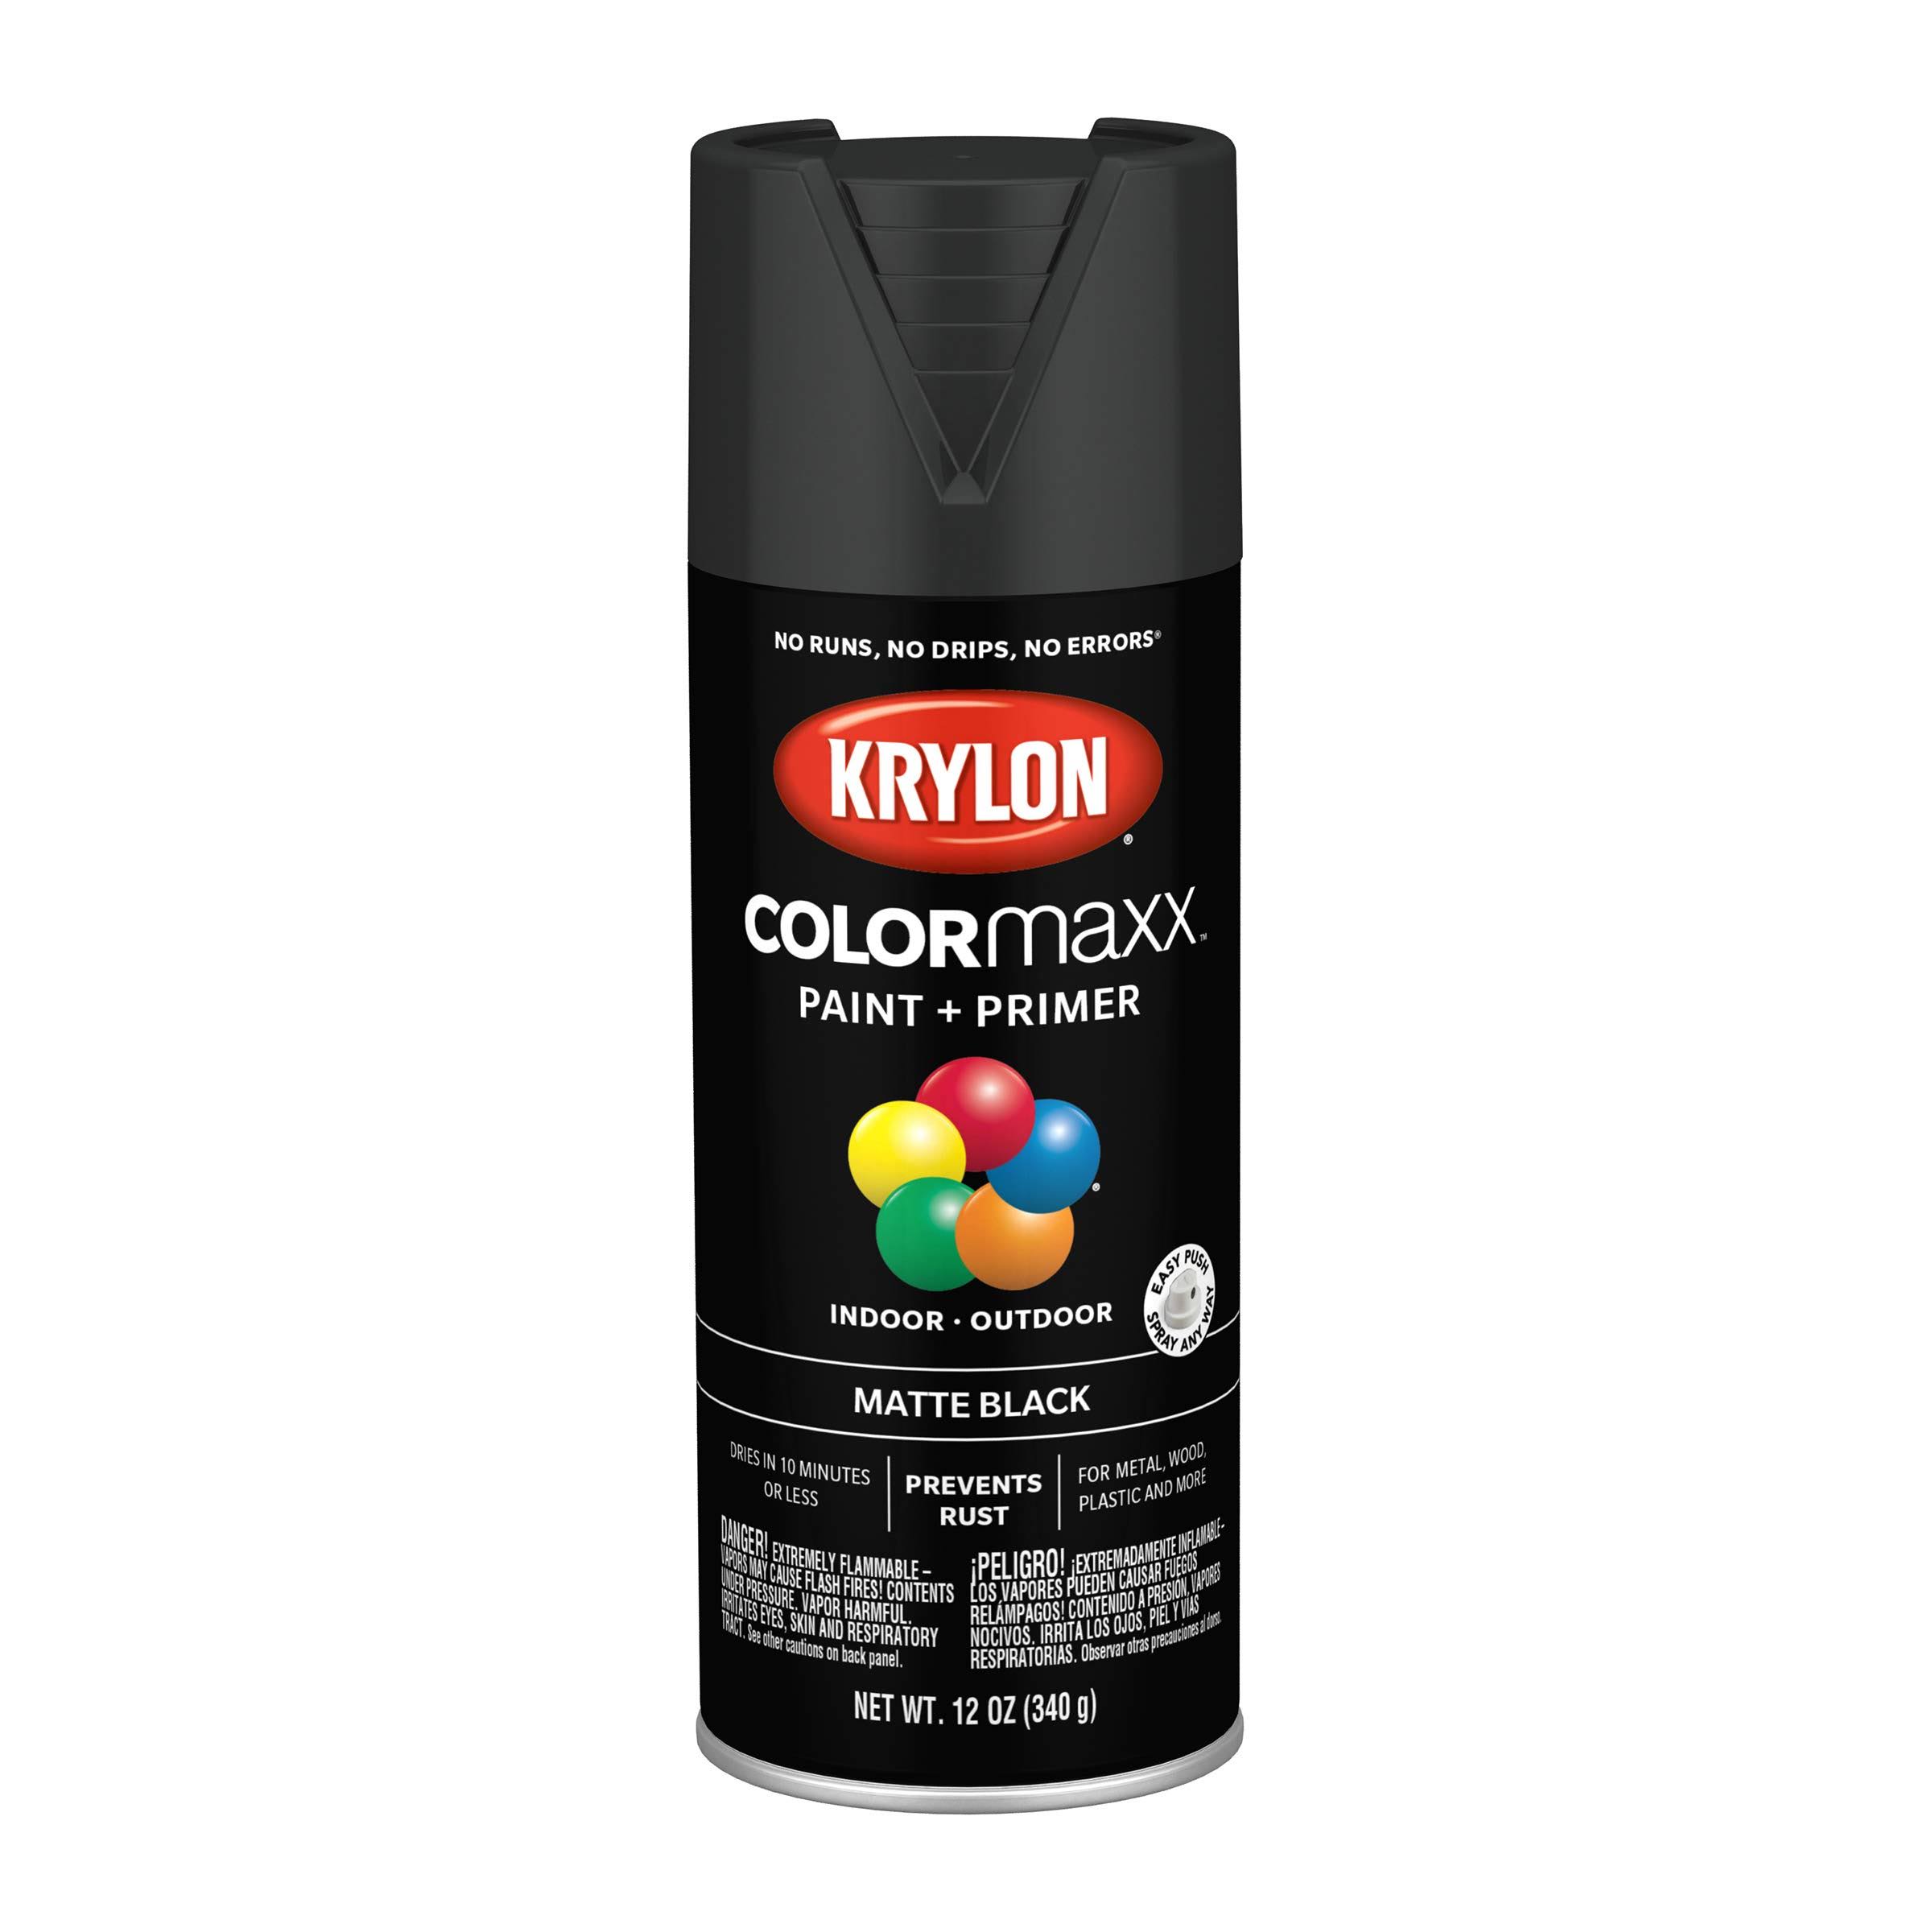 Krylon 5592: Krylon COLORmaxx Paint